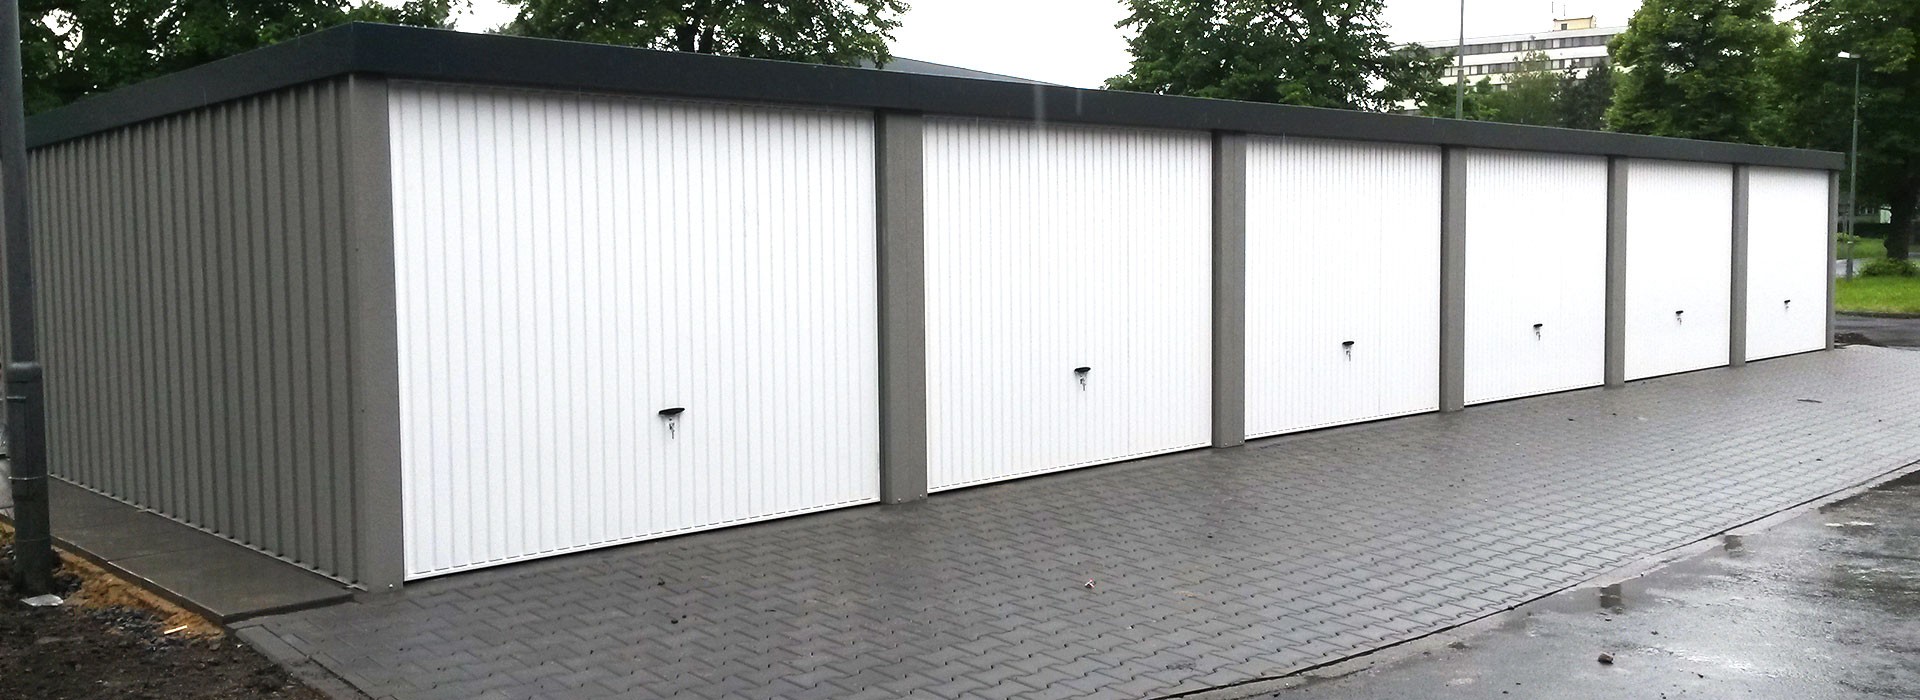 Montažne metalne garaže sa žbukom